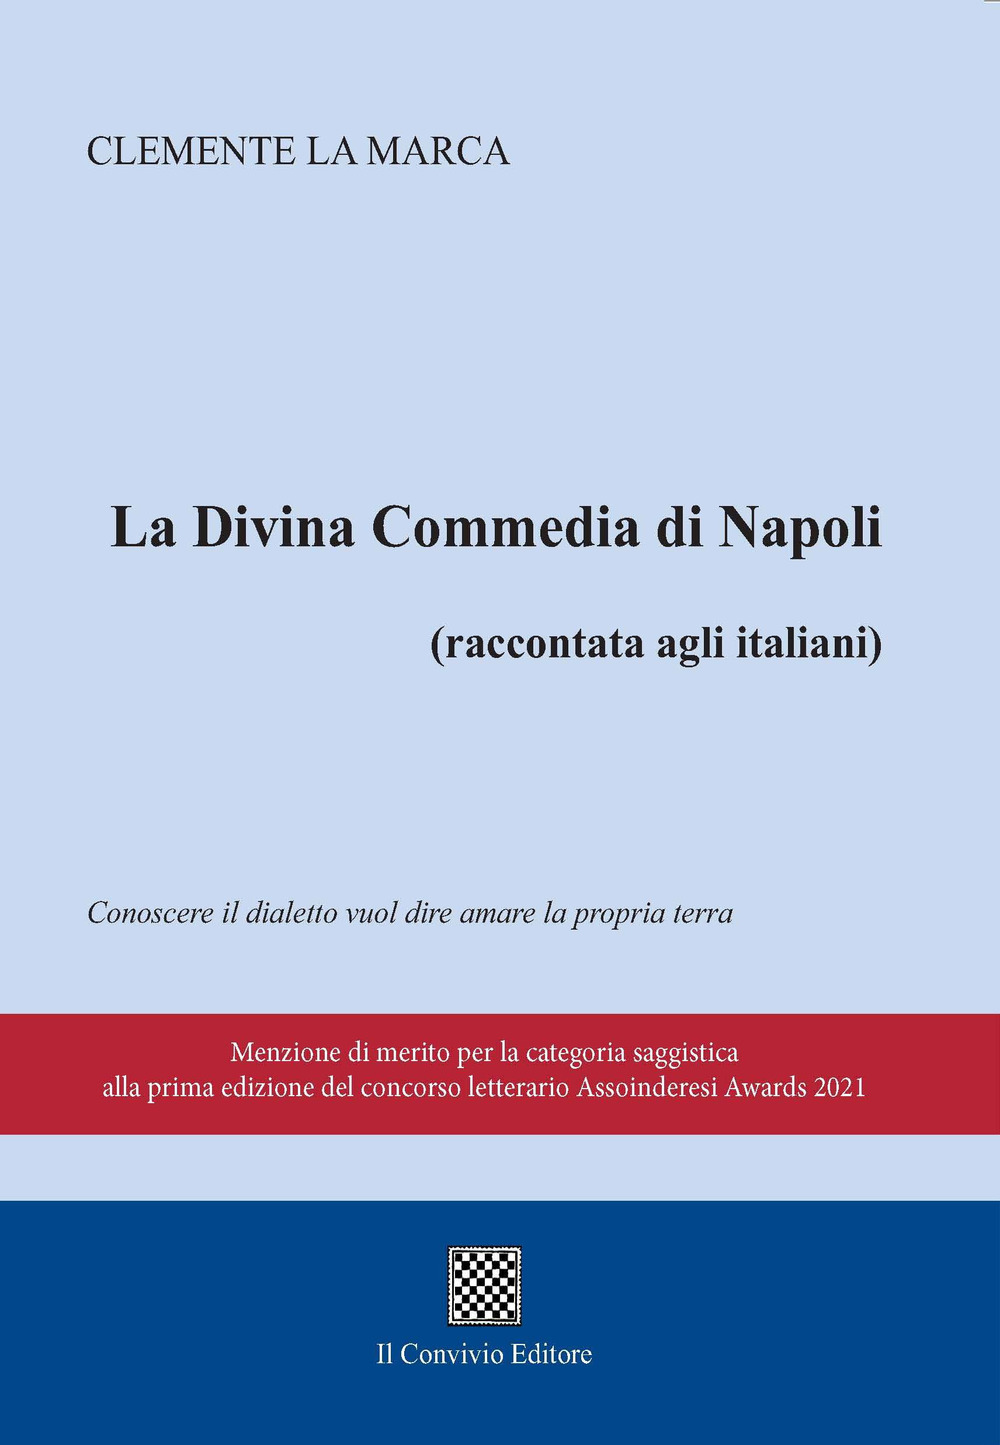 La Divina commedia di Napoli (raccontata agli italiani)